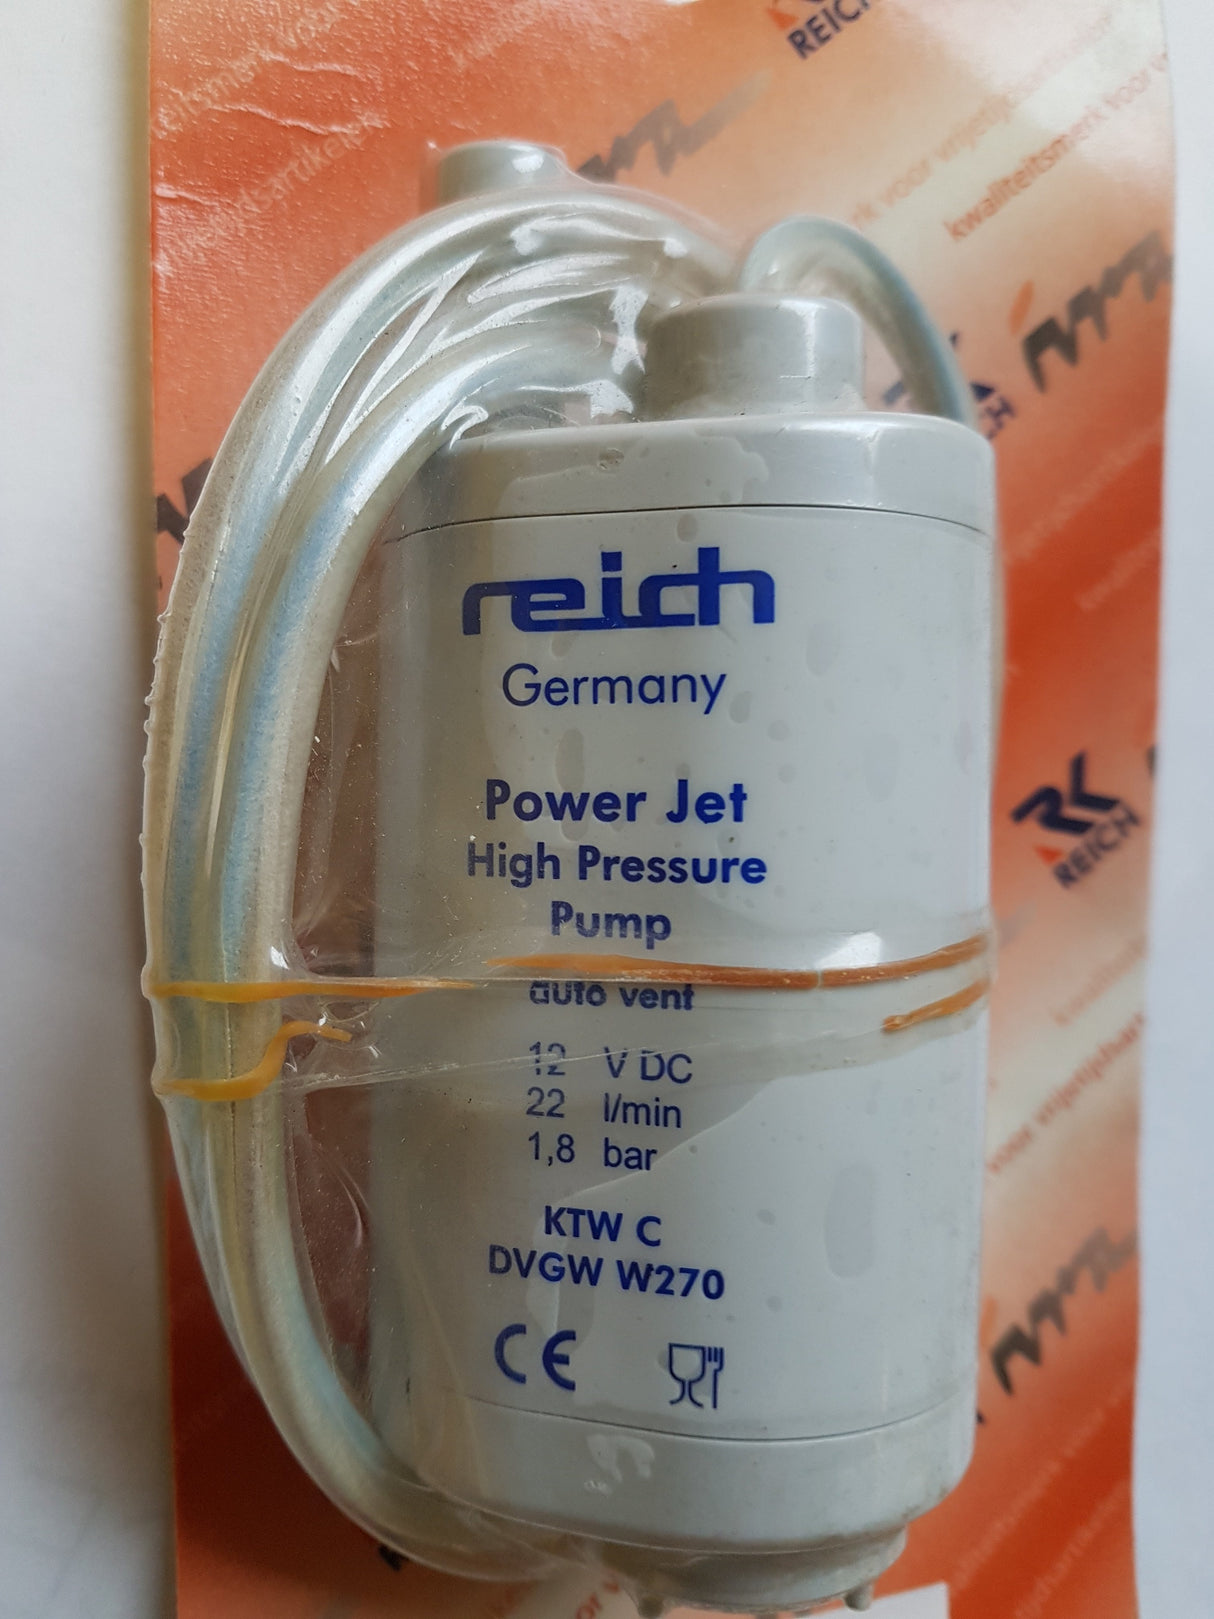 Reich Power Jet Plus High Pressure Wohnwagen Pumpe in Hessen